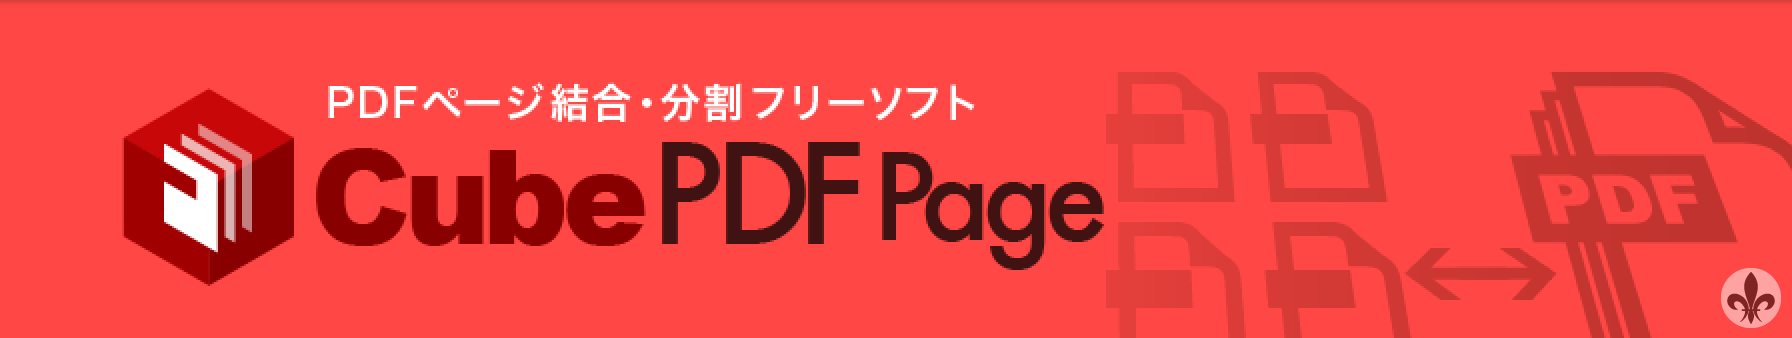 Cube PDF Page